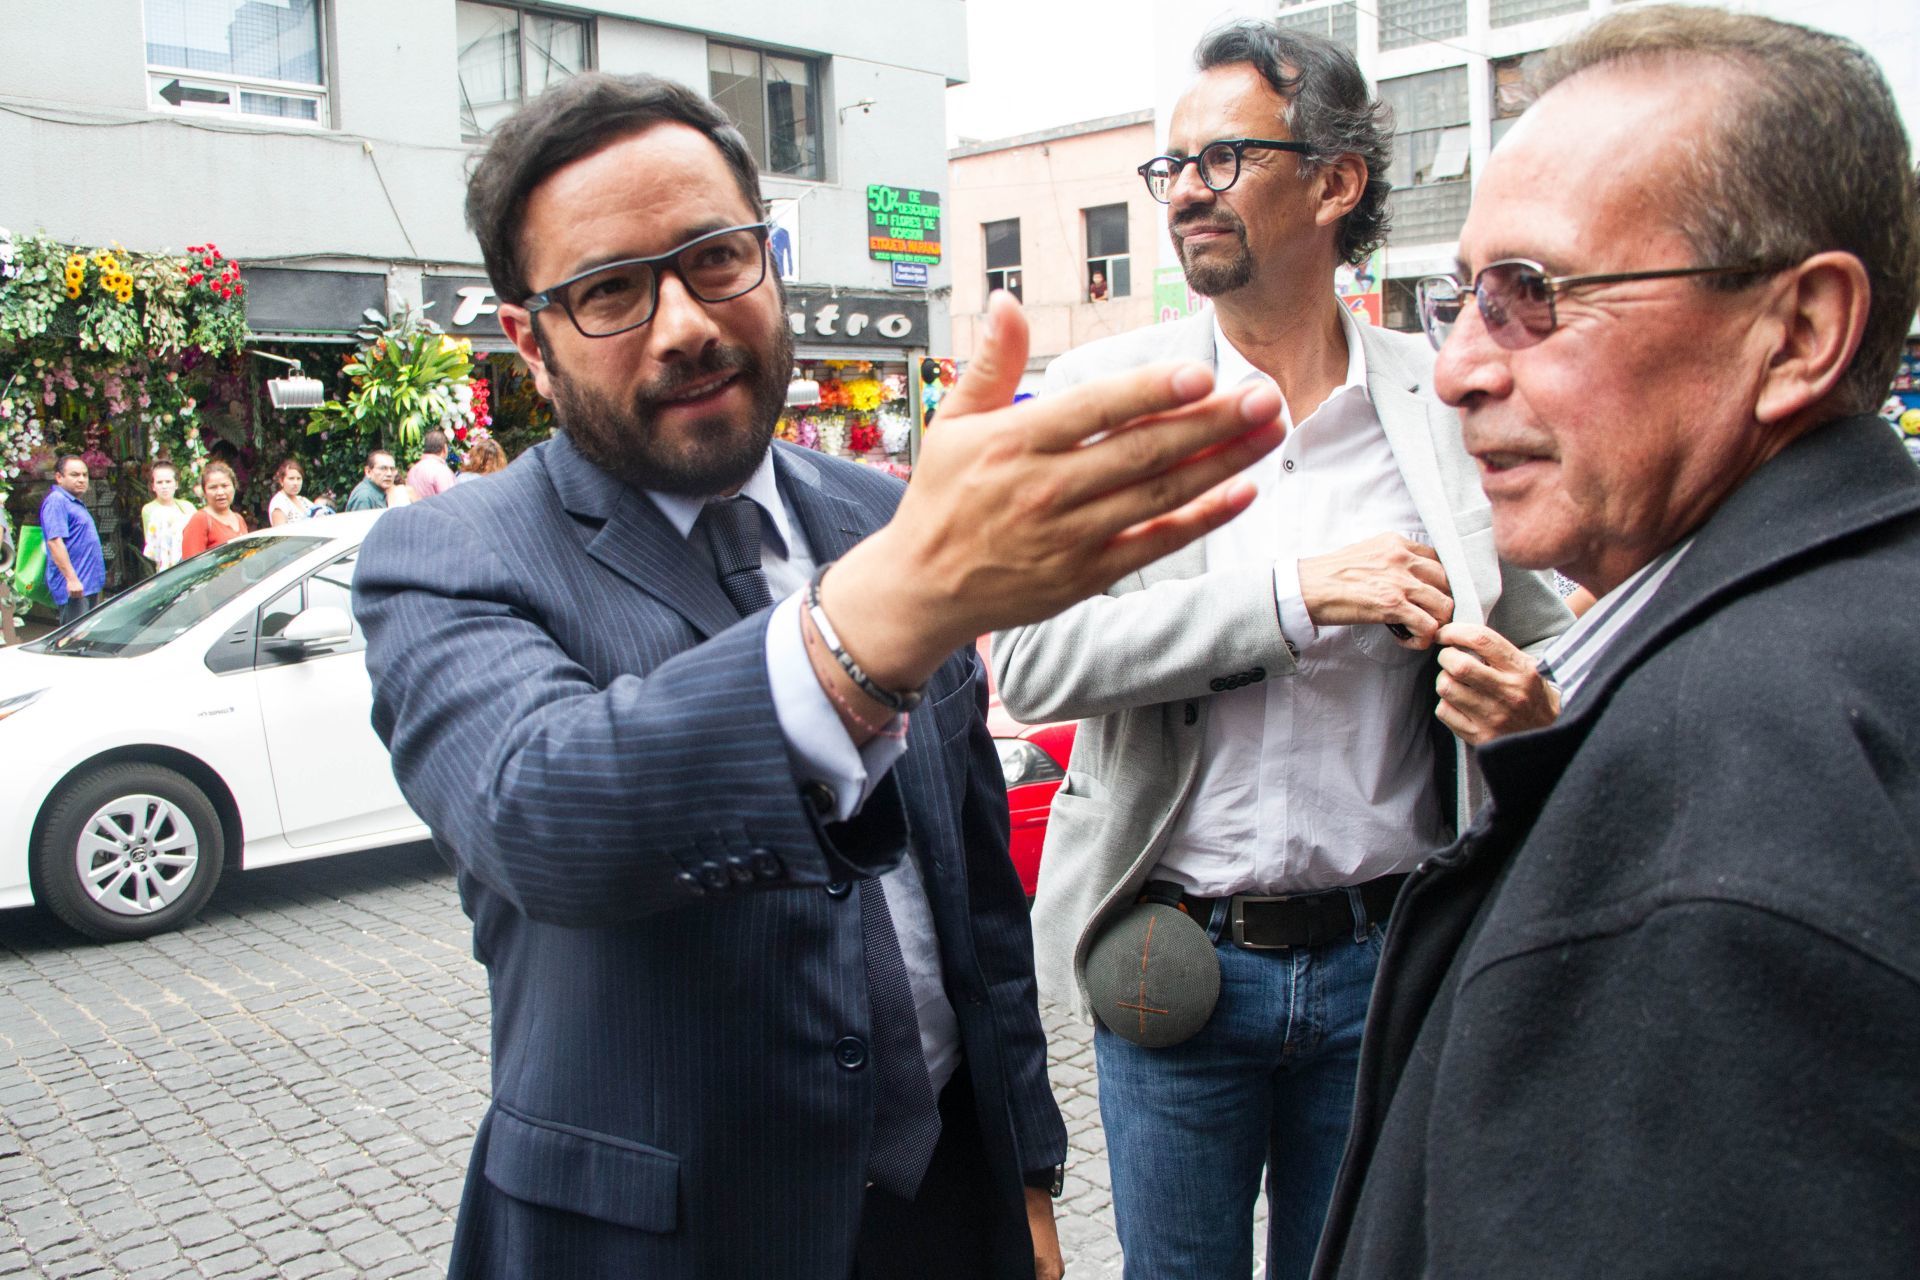 Javier Hidalgo critica estrategia del ‘dueño’ del PAN; avizora reelección de Morena en Miguel Hidalgo